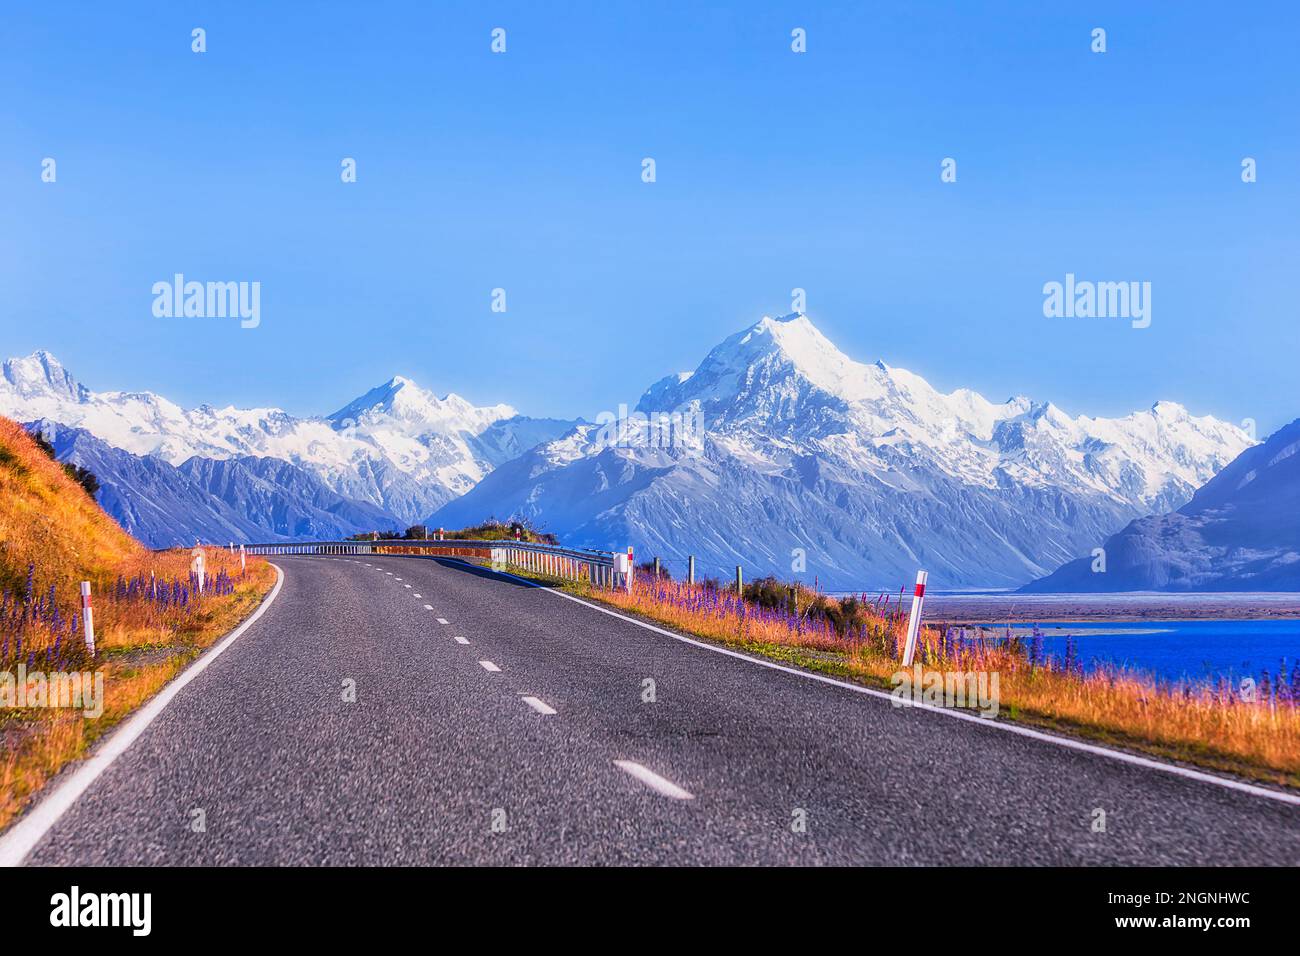 Am Straßenrand blühende Wildblumen auf dem Highway 80 in Neuseeland am Lake Pukaki bis zu den Felsgipfeln des Mt Cook. Stockfoto